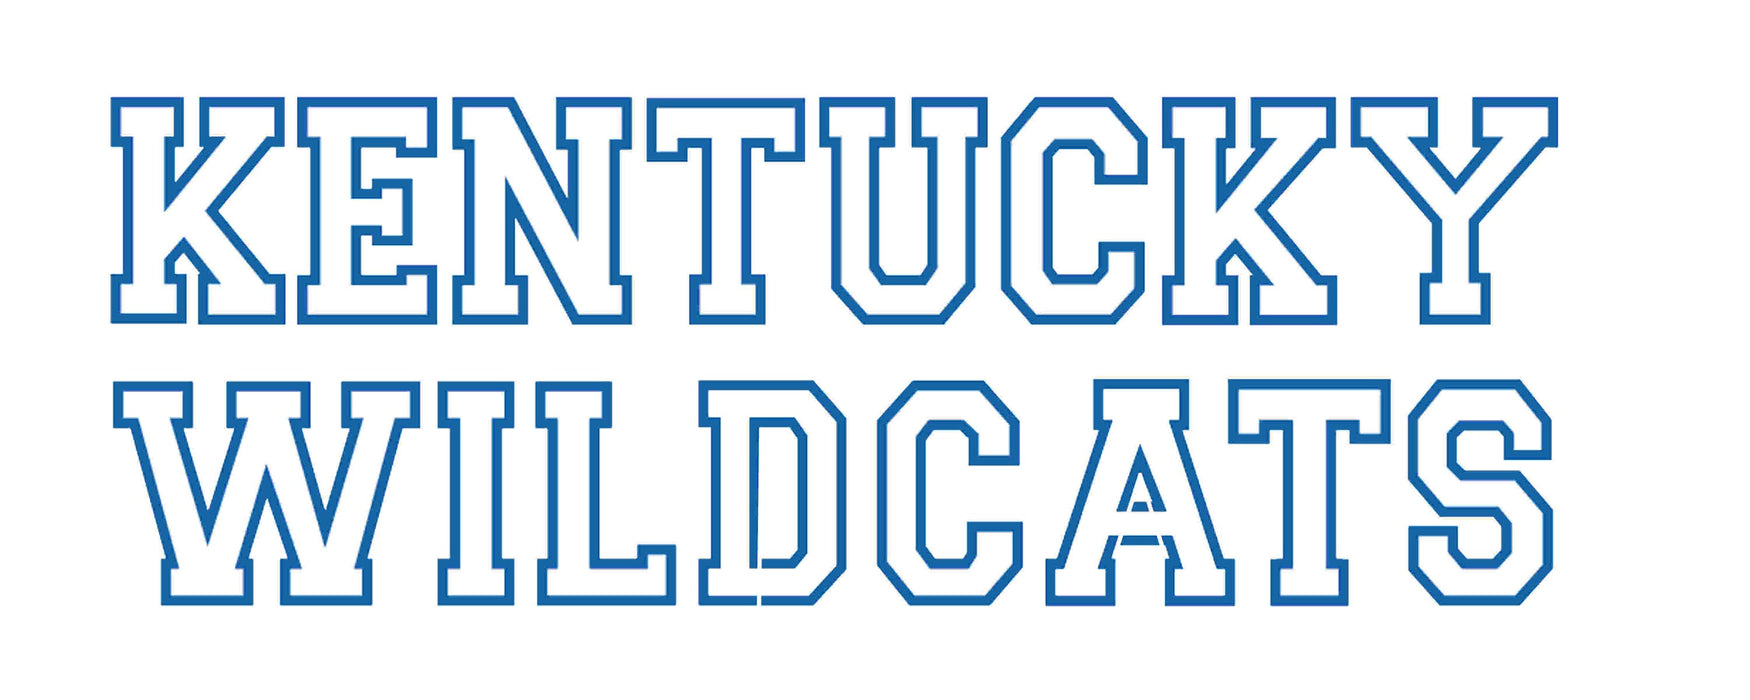 Kentucky Wildcat text